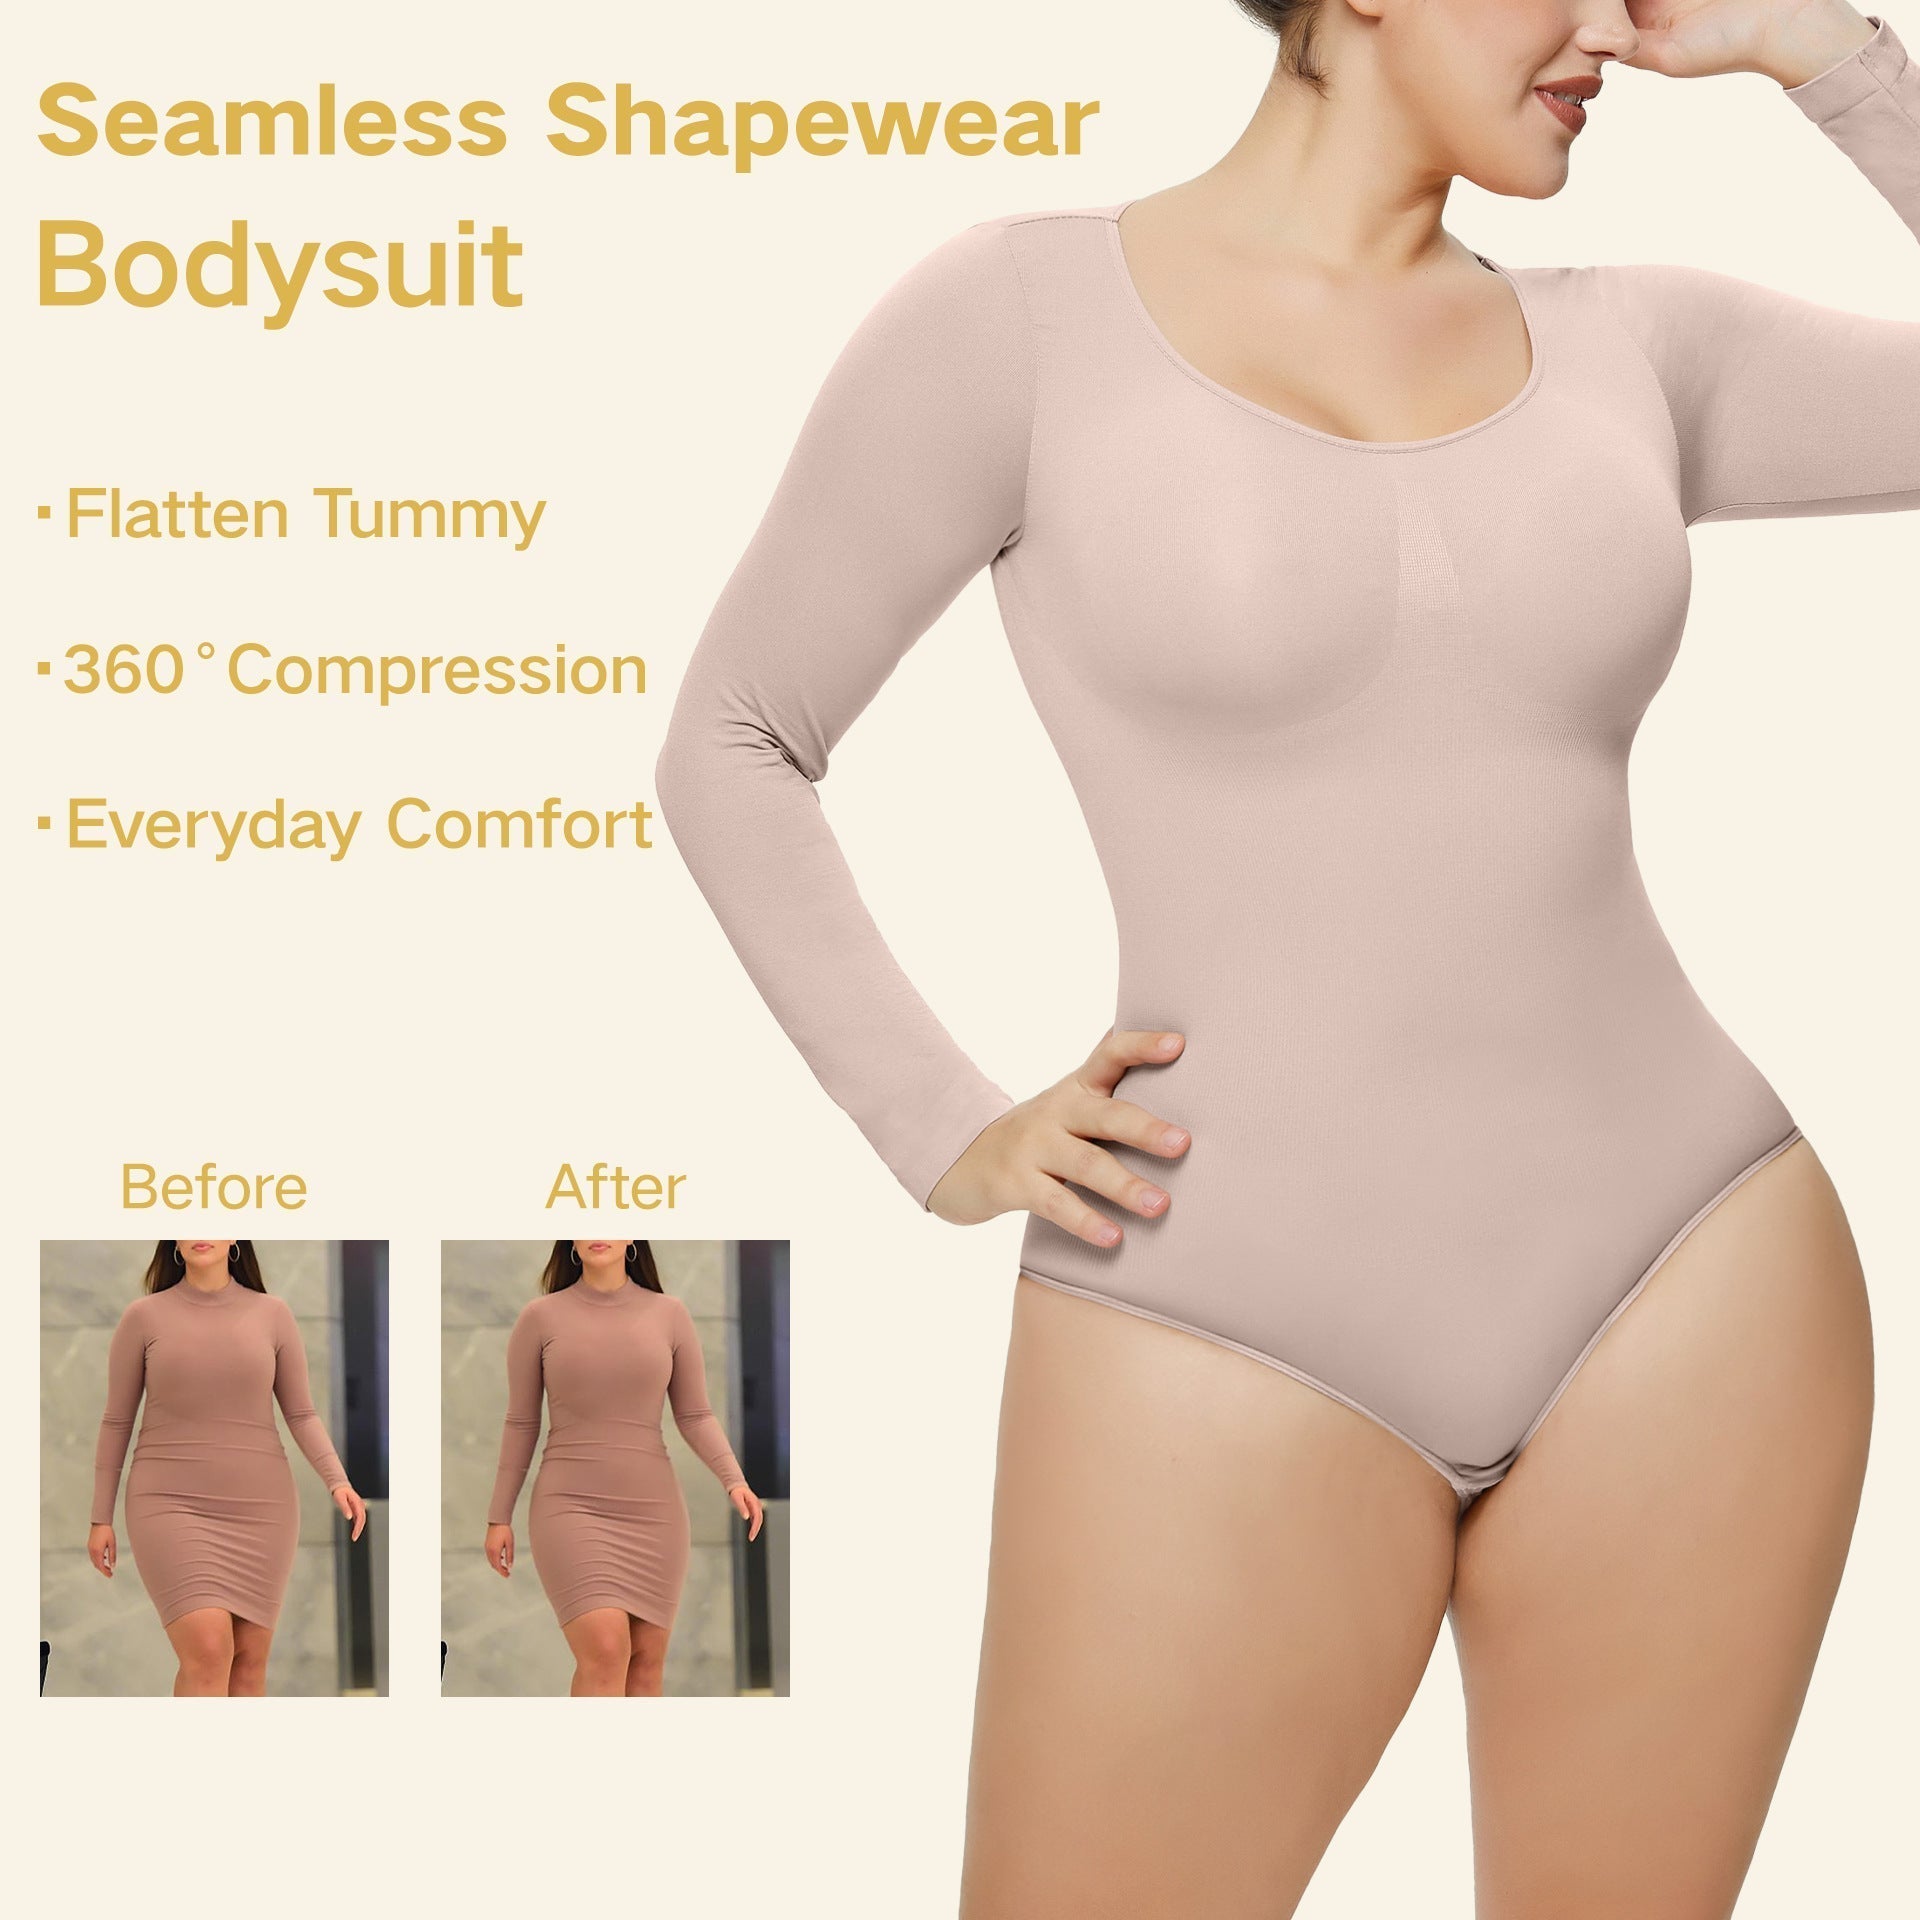 Cloud Bras® Women's long-sleeved body shape seamless one-piece